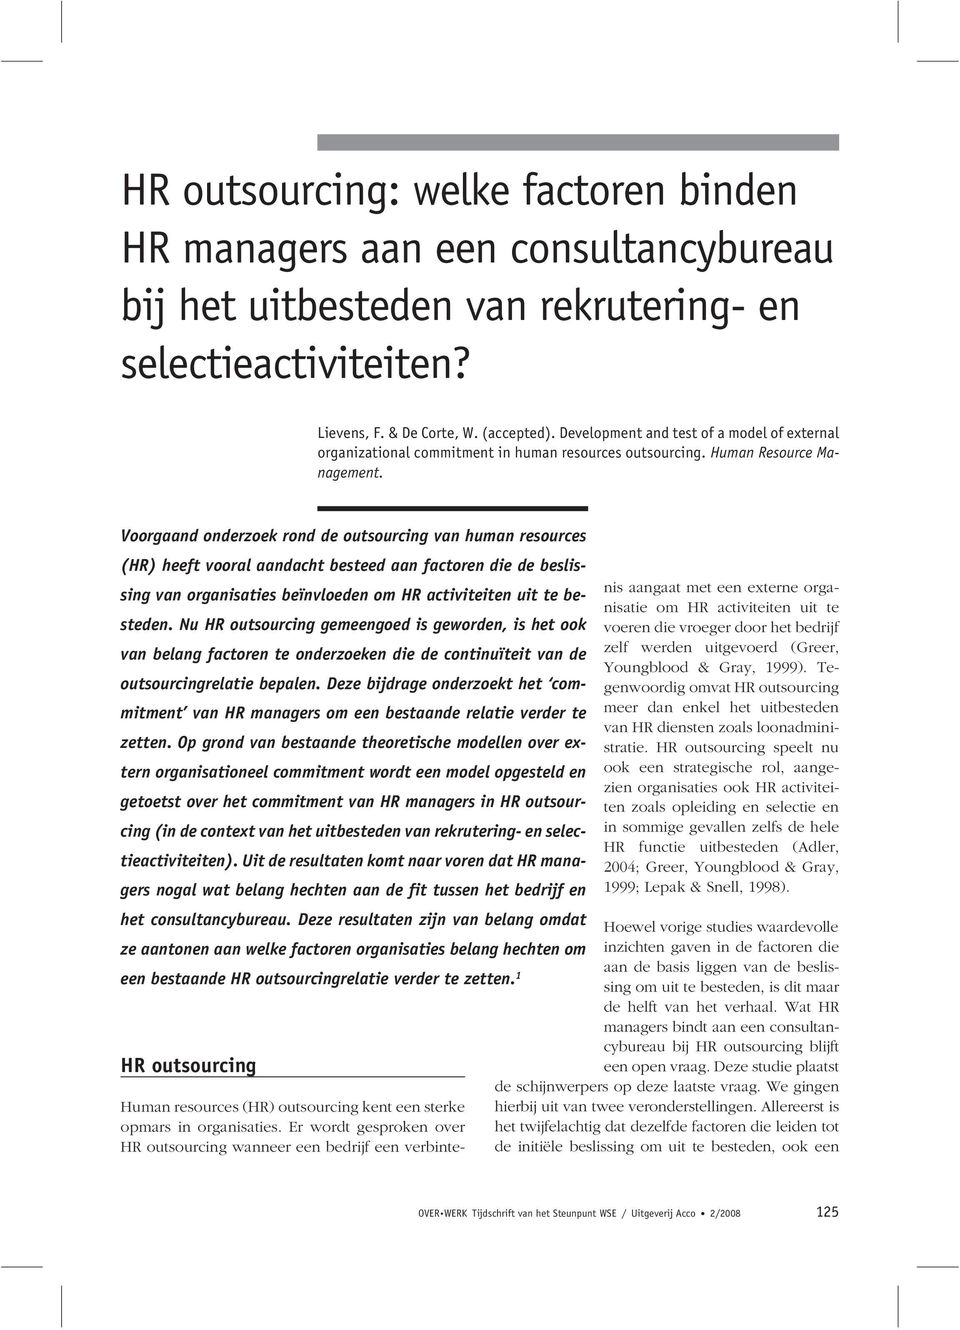 Voorgaand onderzoek rond de outsourcing van human resources (HR) heeft vooral aandacht besteed aan factoren die de beslissing van organisaties beïnvloeden om HR activiteiten uit te besteden.